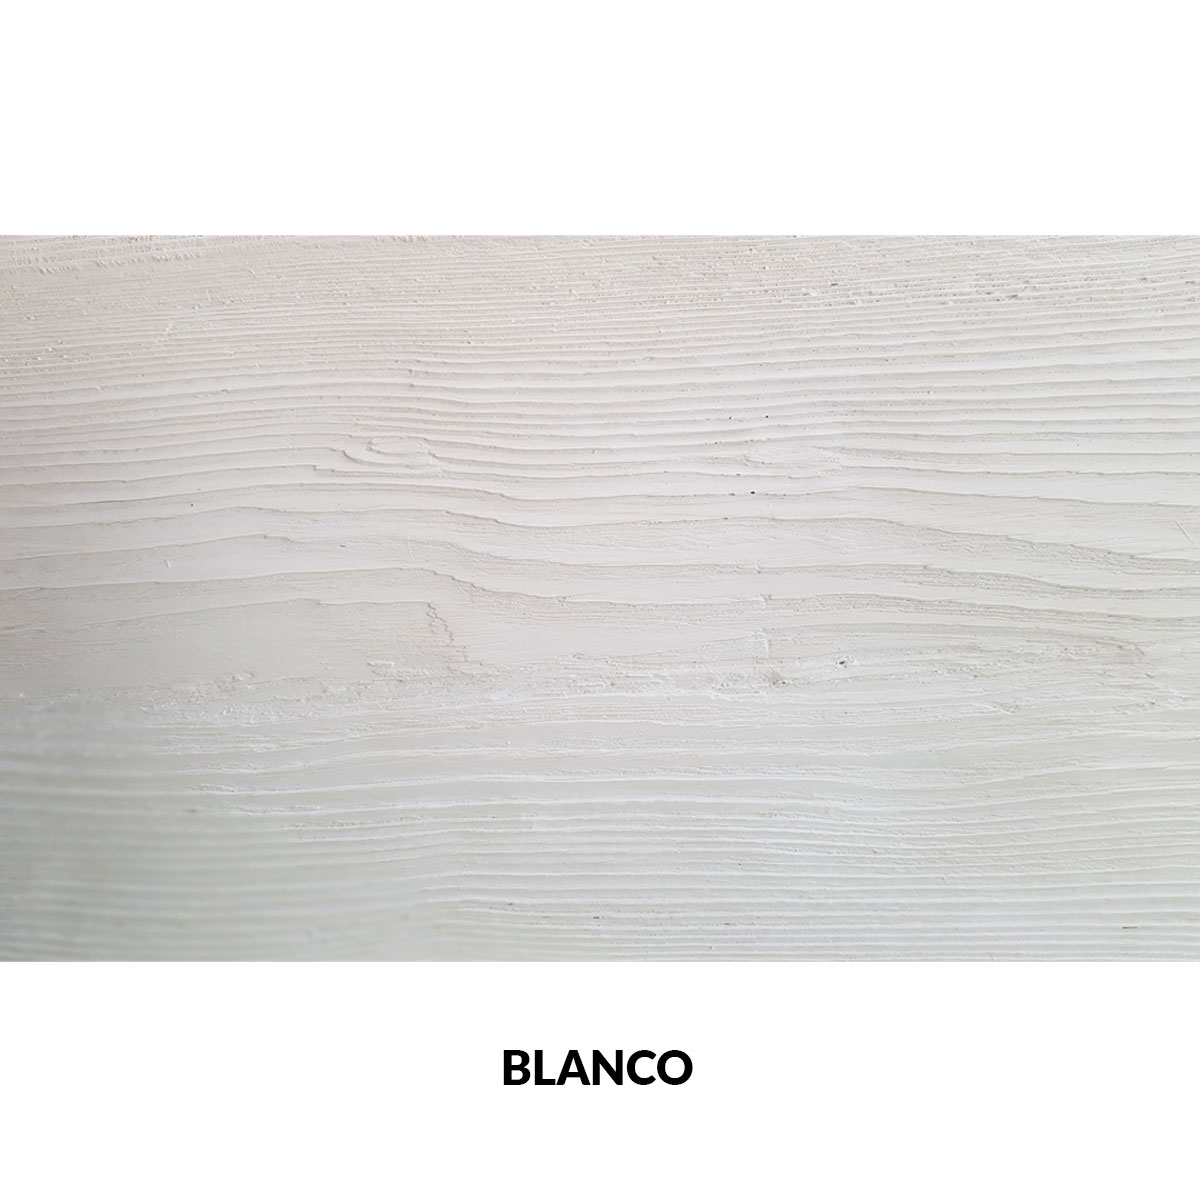 Panel rústico sin lamas imitación madera de 400x62cm blanco